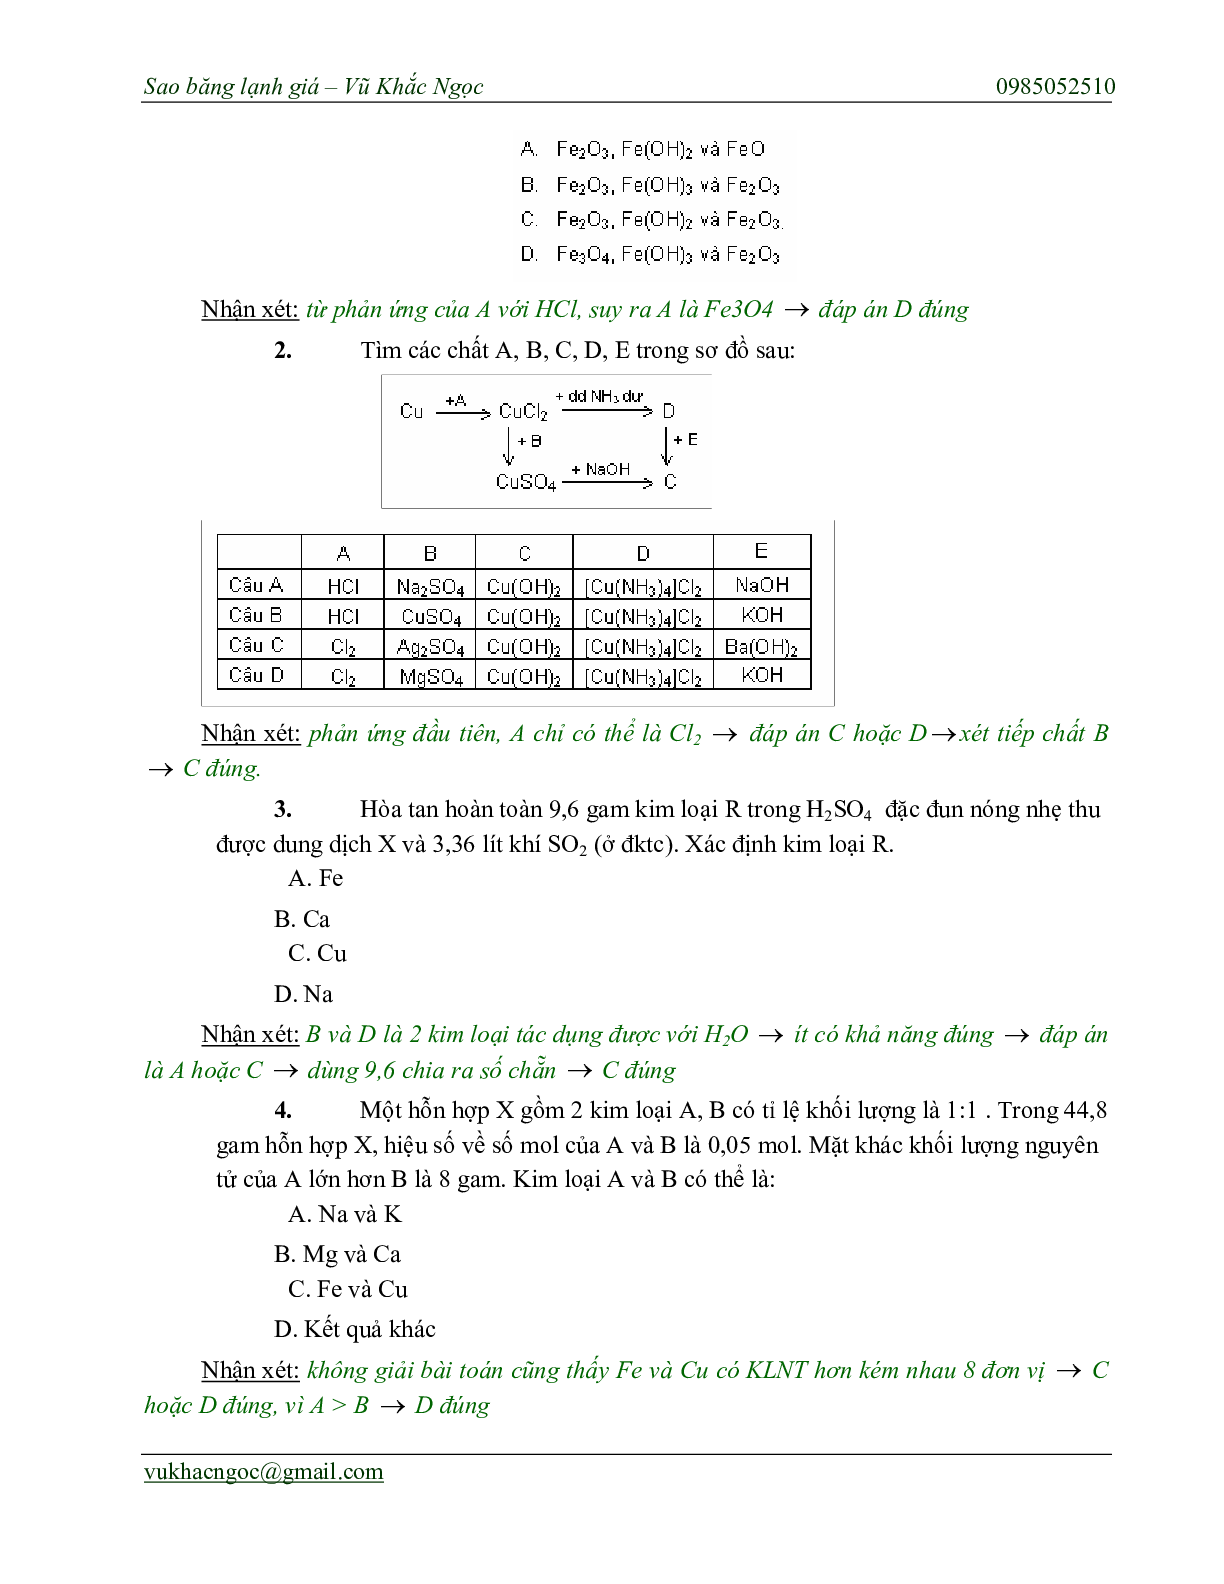 Chiến thuật chọn ngẫu nhiên trong bài thi trắc nghiệm môn Hóa học thi THPT Quốc Gia (trang 7)